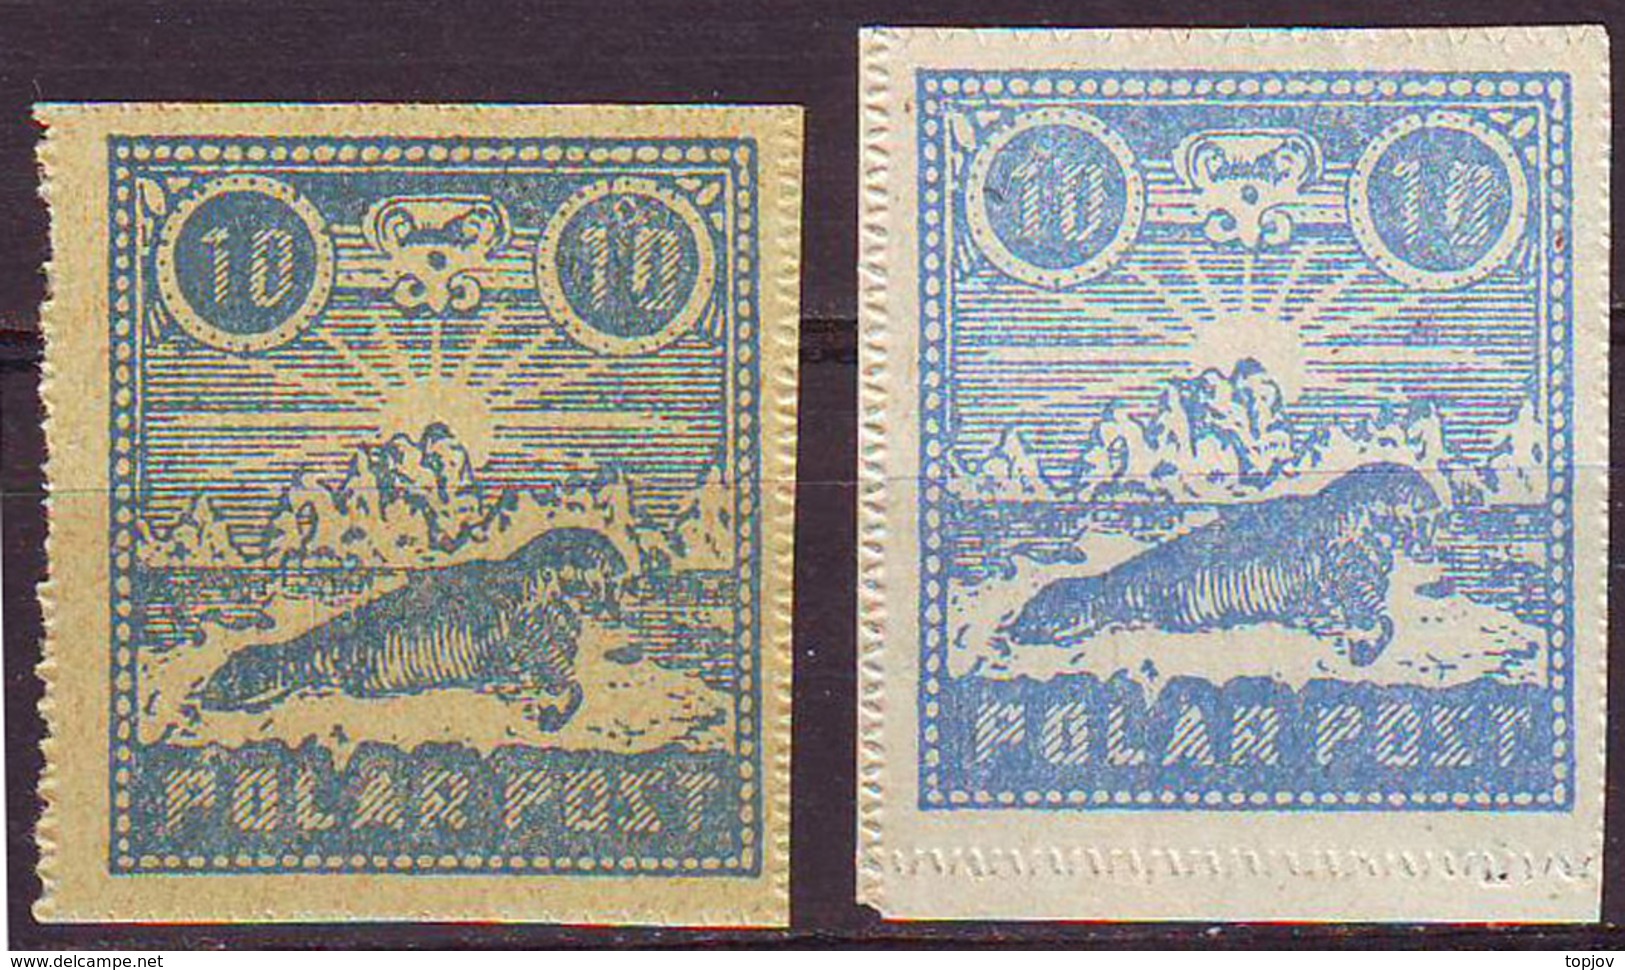 POLAR  POST - LABELS - 3 Different - Mint - SEA CALF - Cc 1905-10 - Antarktischen Tierwelt